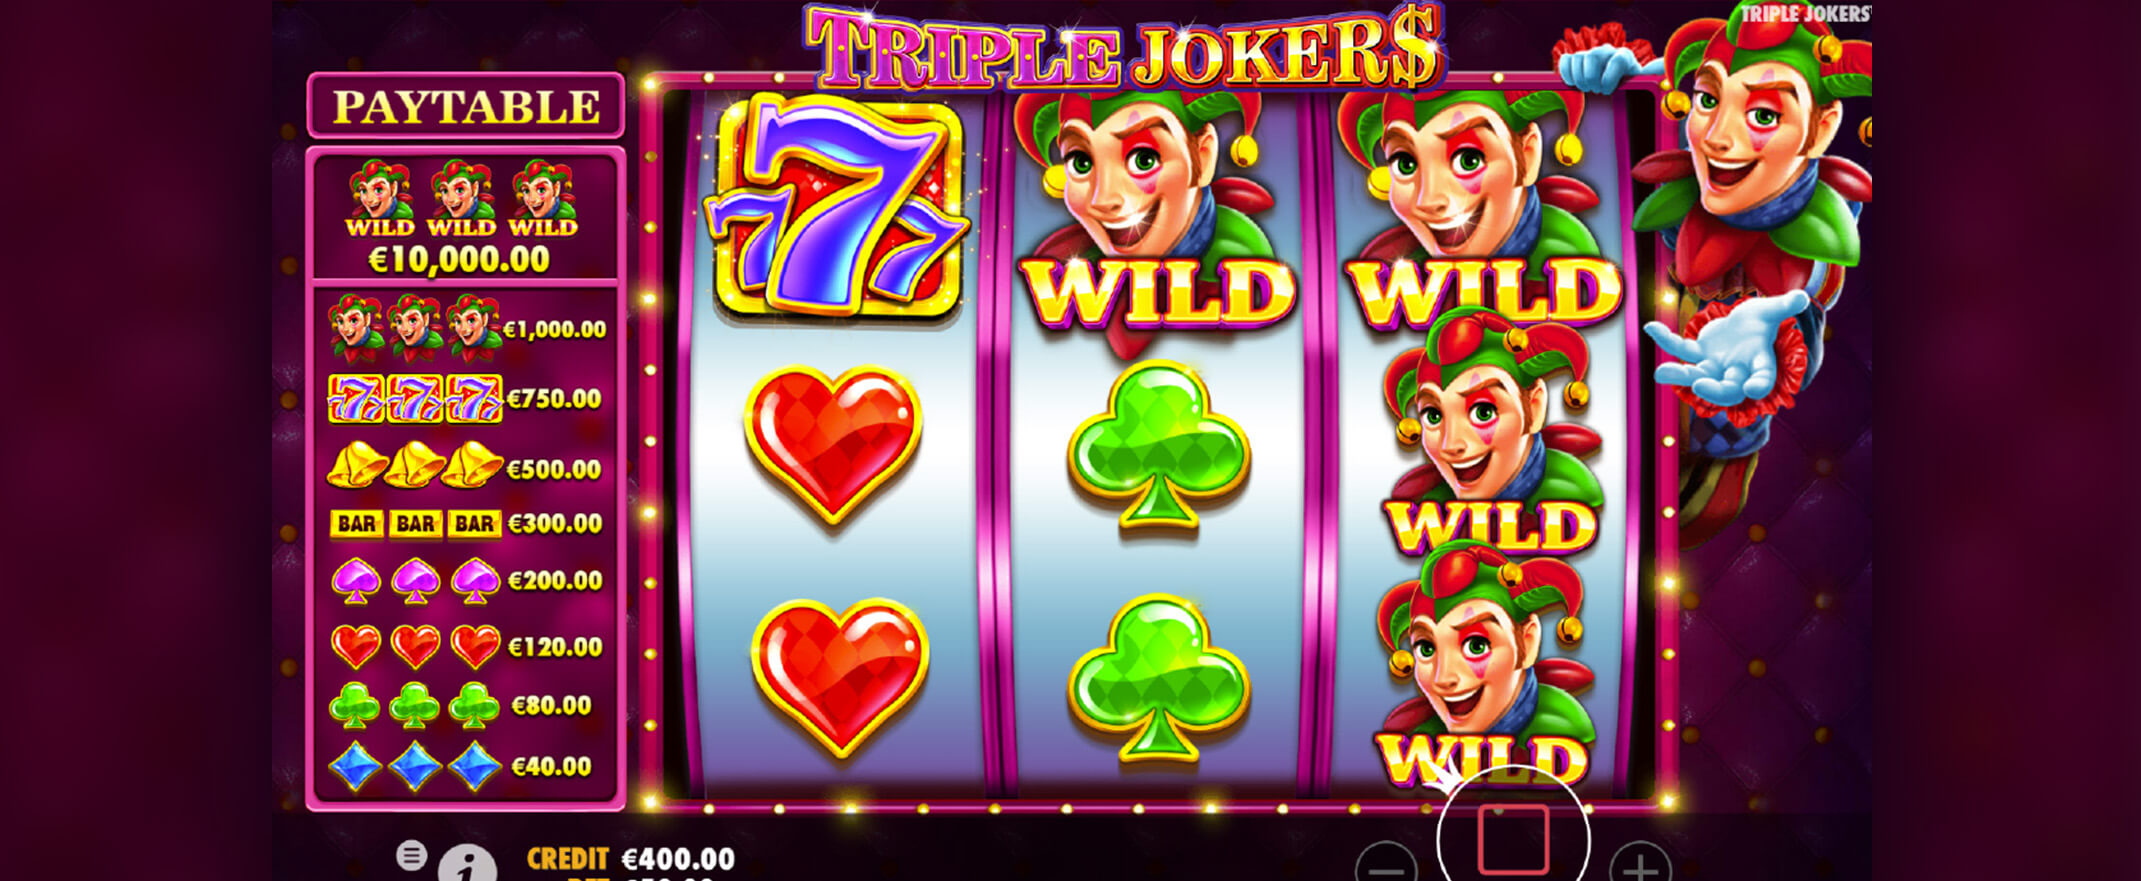 Triple Jokers - Pragmatic Play